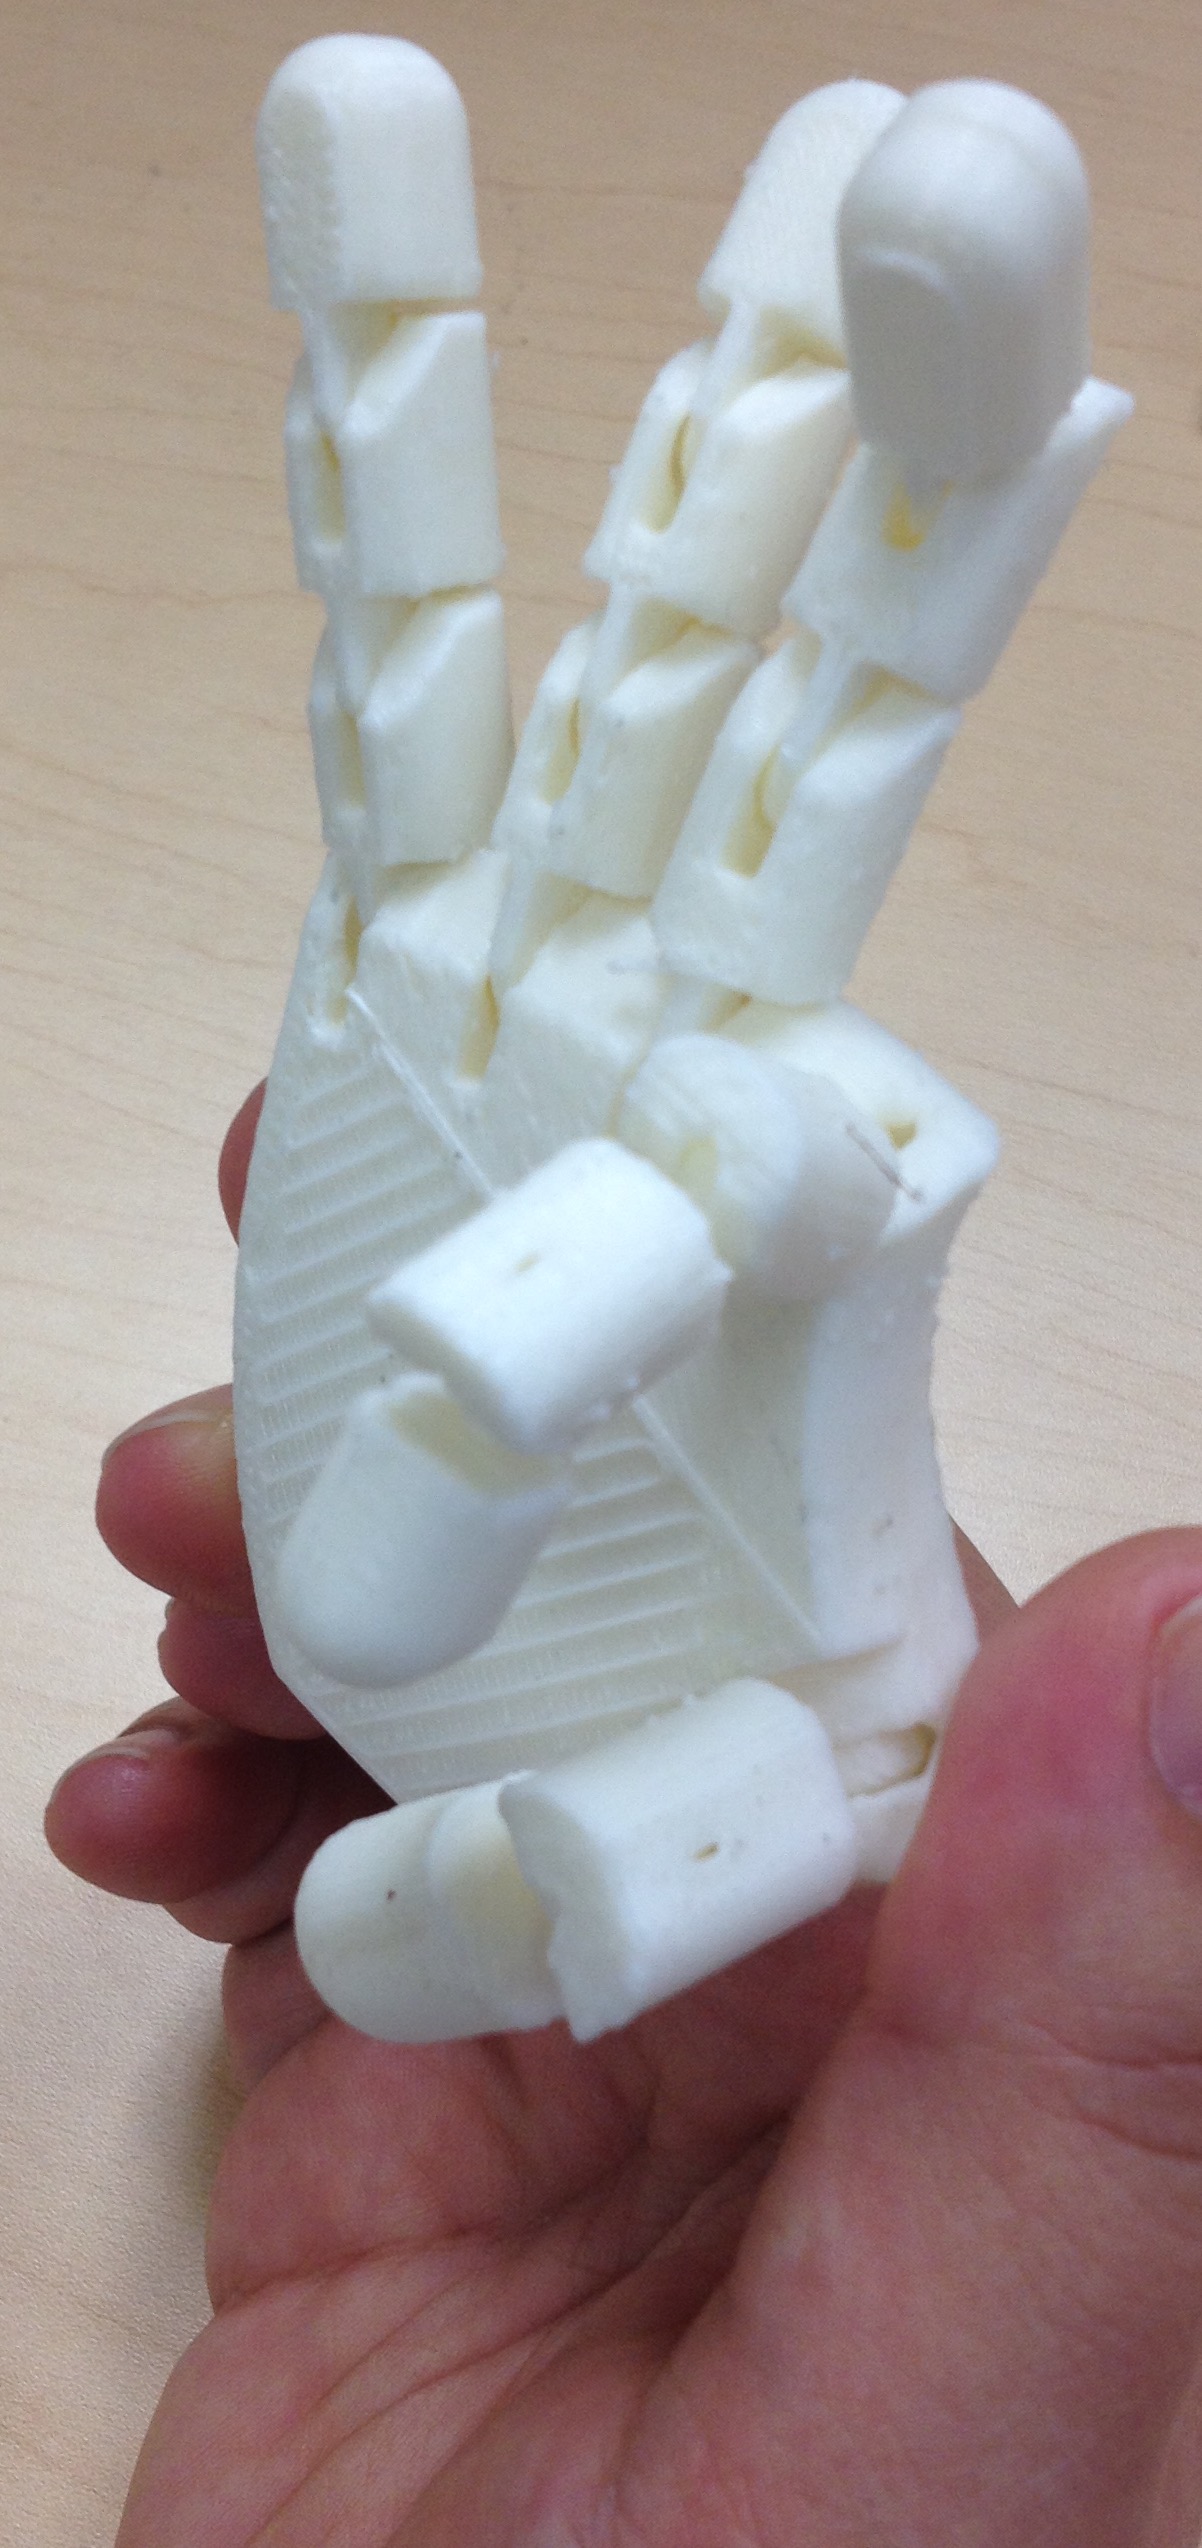 3D Printing, Tactiles and Haptics DIAGRAM Center